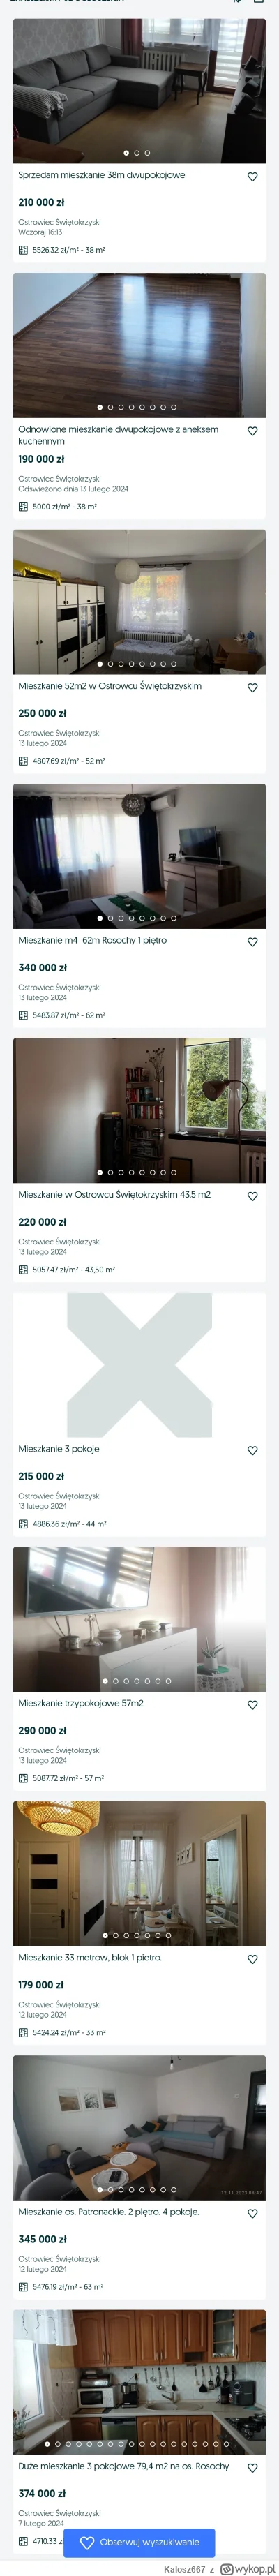 Kalosz667 - #nieruchomosci  #demografia
Wykopki: dziś 300k to gówno nie pieniądz, bez...